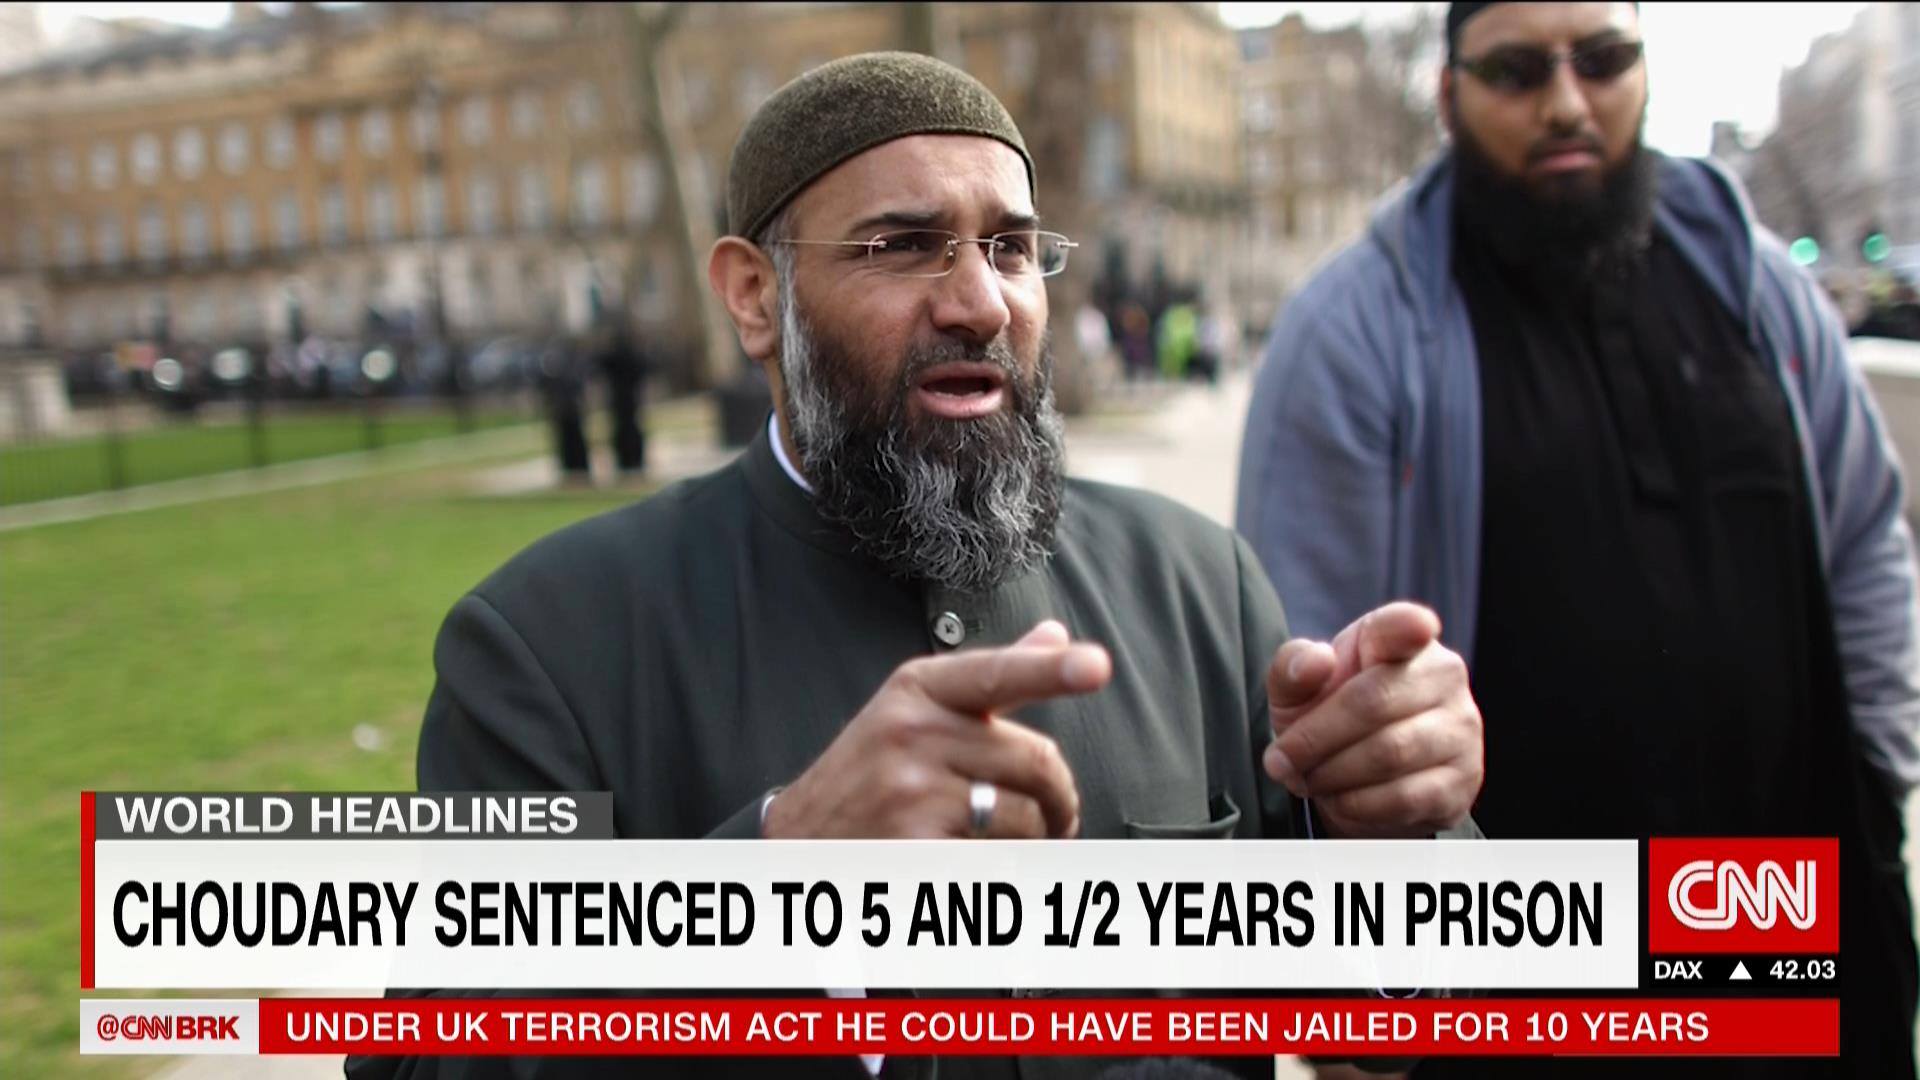 الحكم على رجل الدين البريطاني أنجم شودري بالسجن ٥ سنوات ونصف بتهمة دعم داعش